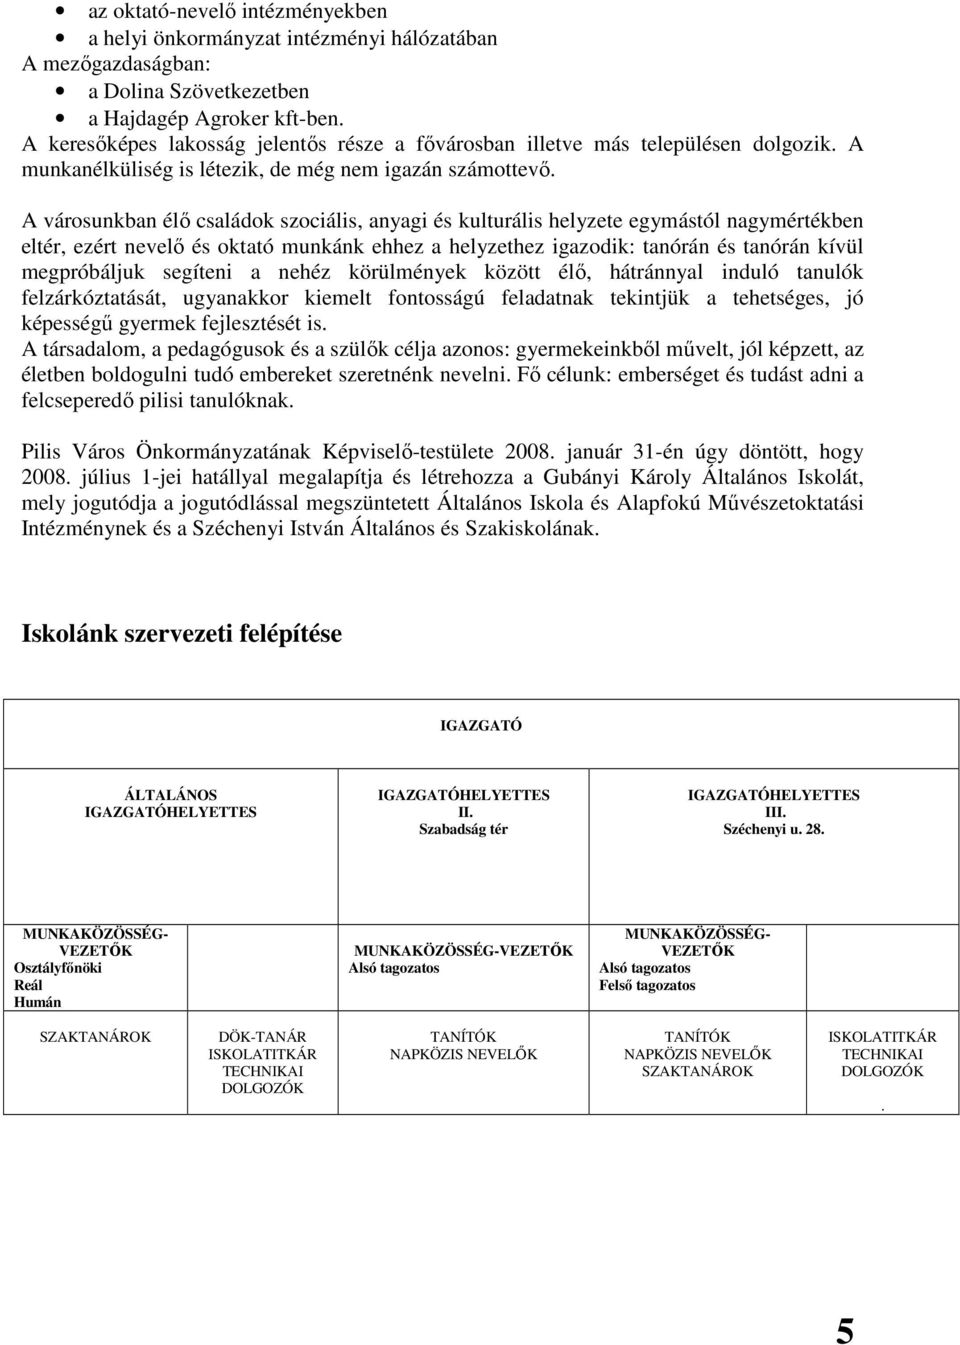 GUBÁNYI KÁROLY ÁLTALÁNOS ISKOLA PEDAGÓGIAI PROGRAM - PDF Ingyenes letöltés